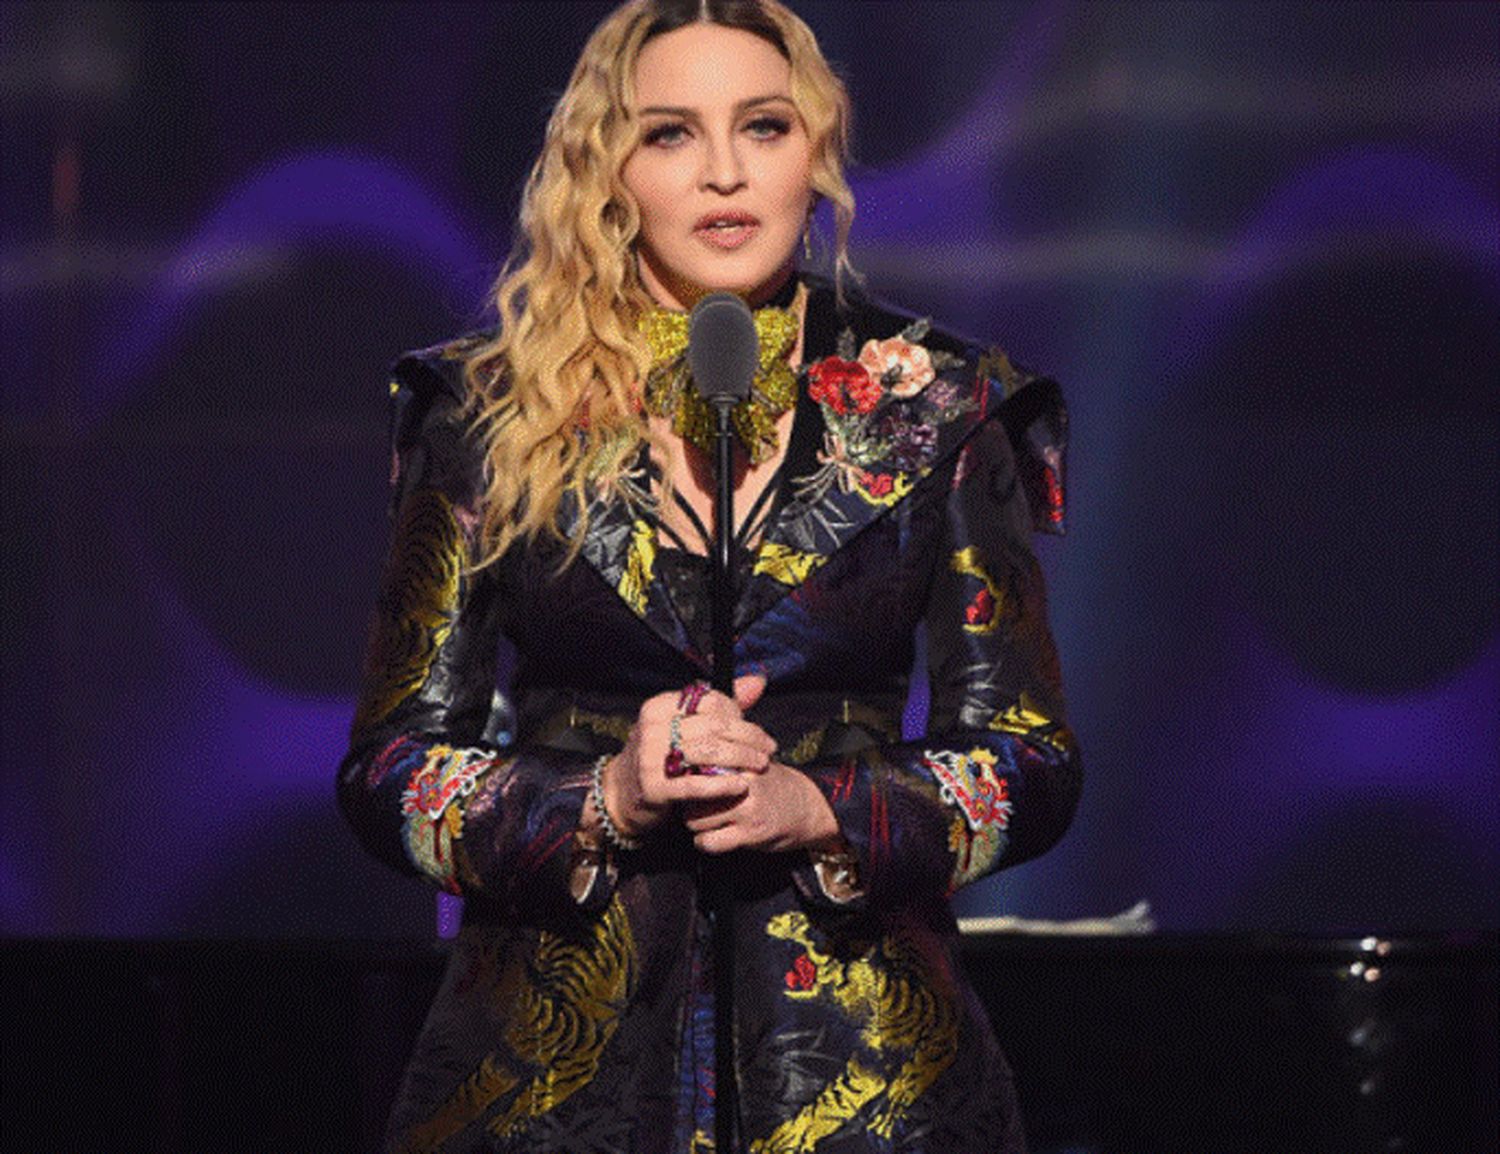 Madonna e milionară, fratele său a trăit din cerșit. De ce nu s-au suportat niciodată